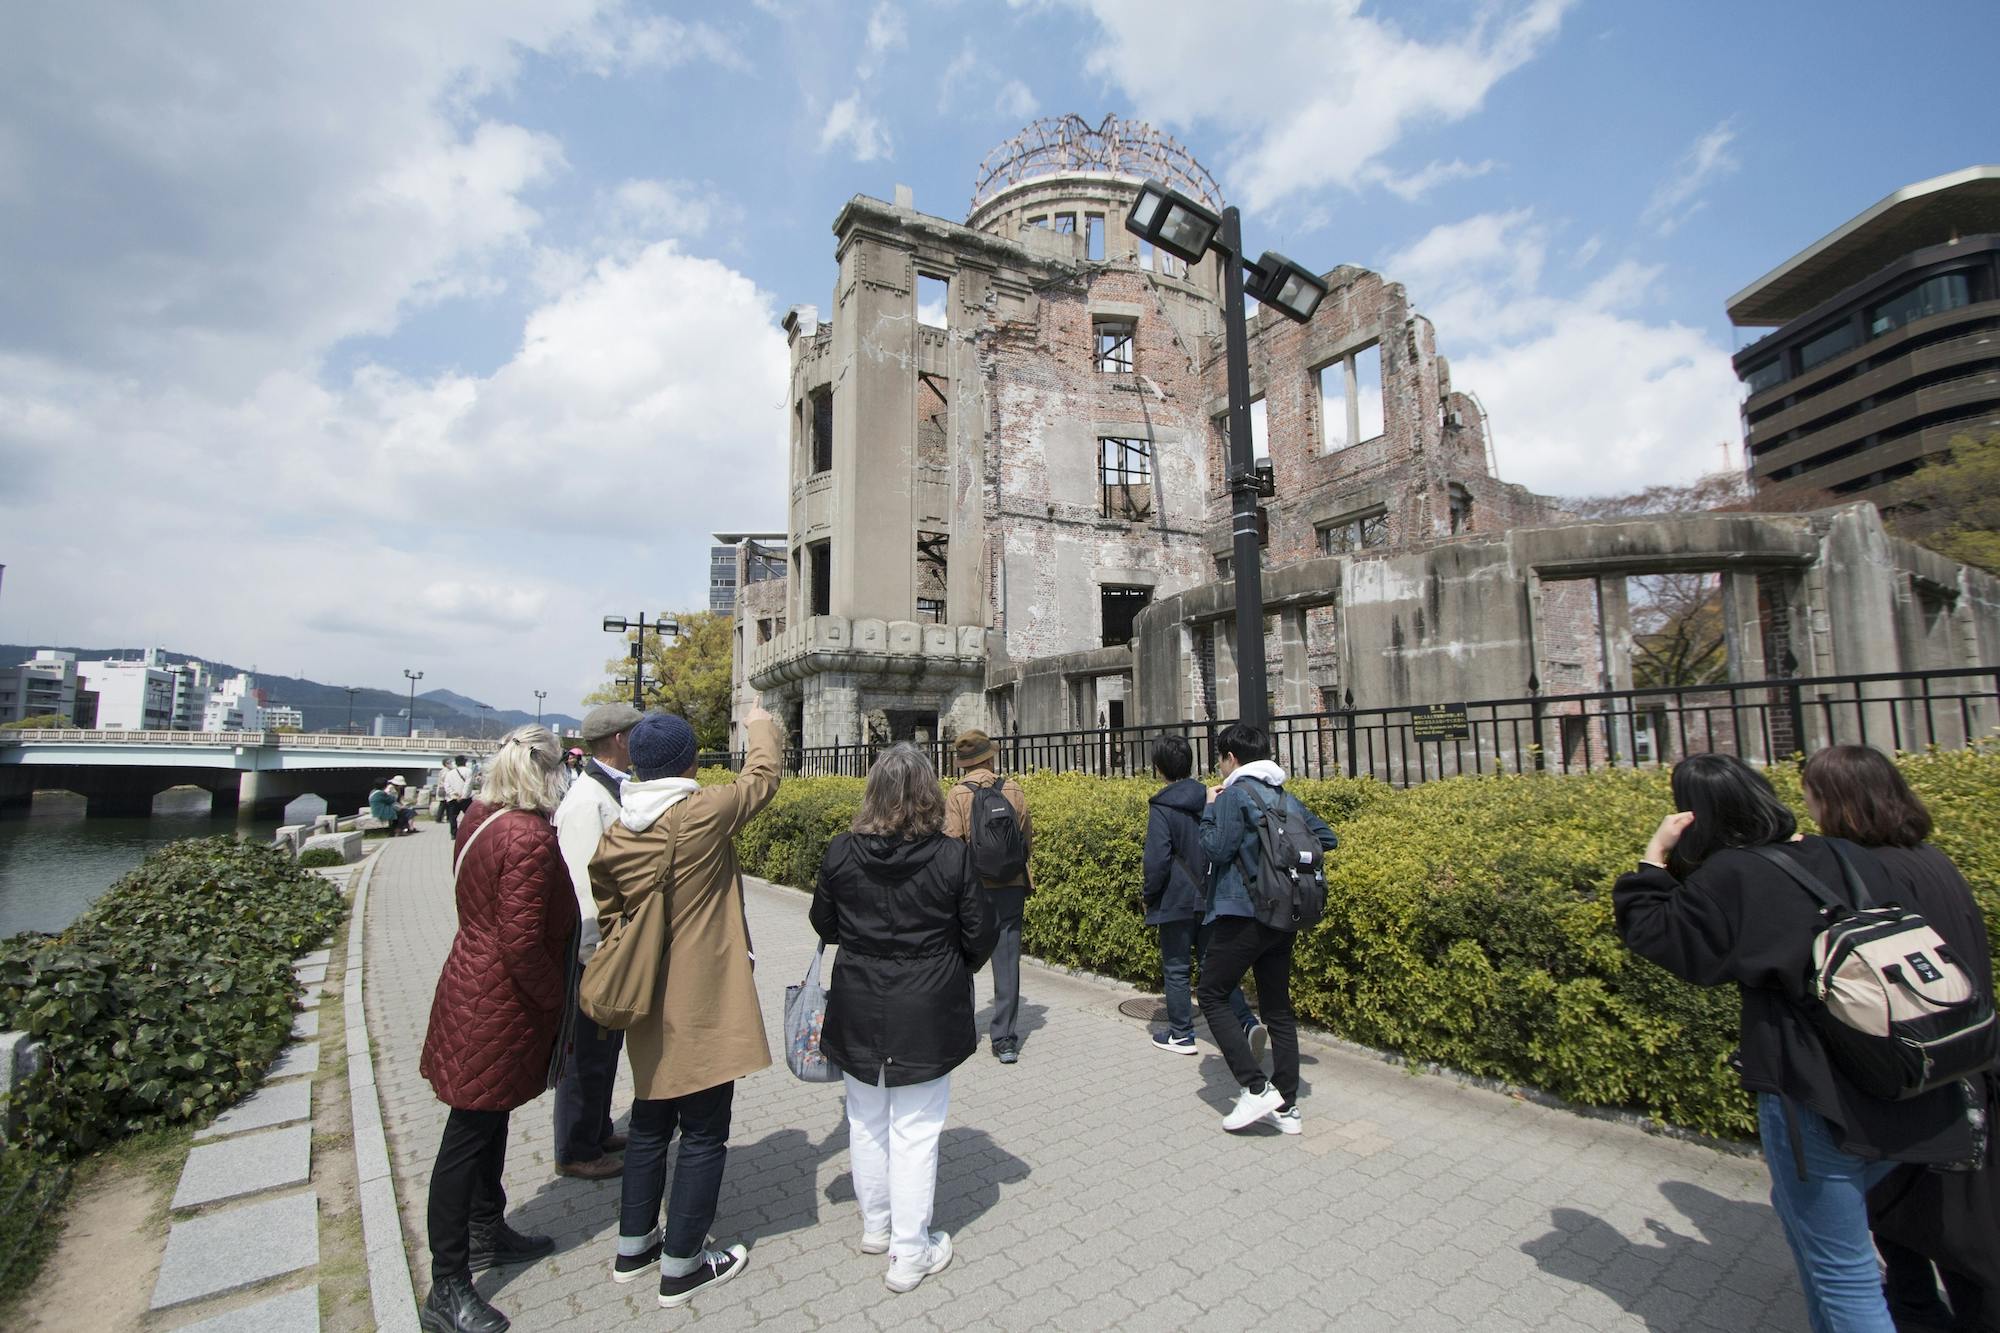 Wycieczka piesza po Hiroszimie Peace (Heiwa) i miejsca światowego dziedzictwa kulturowego